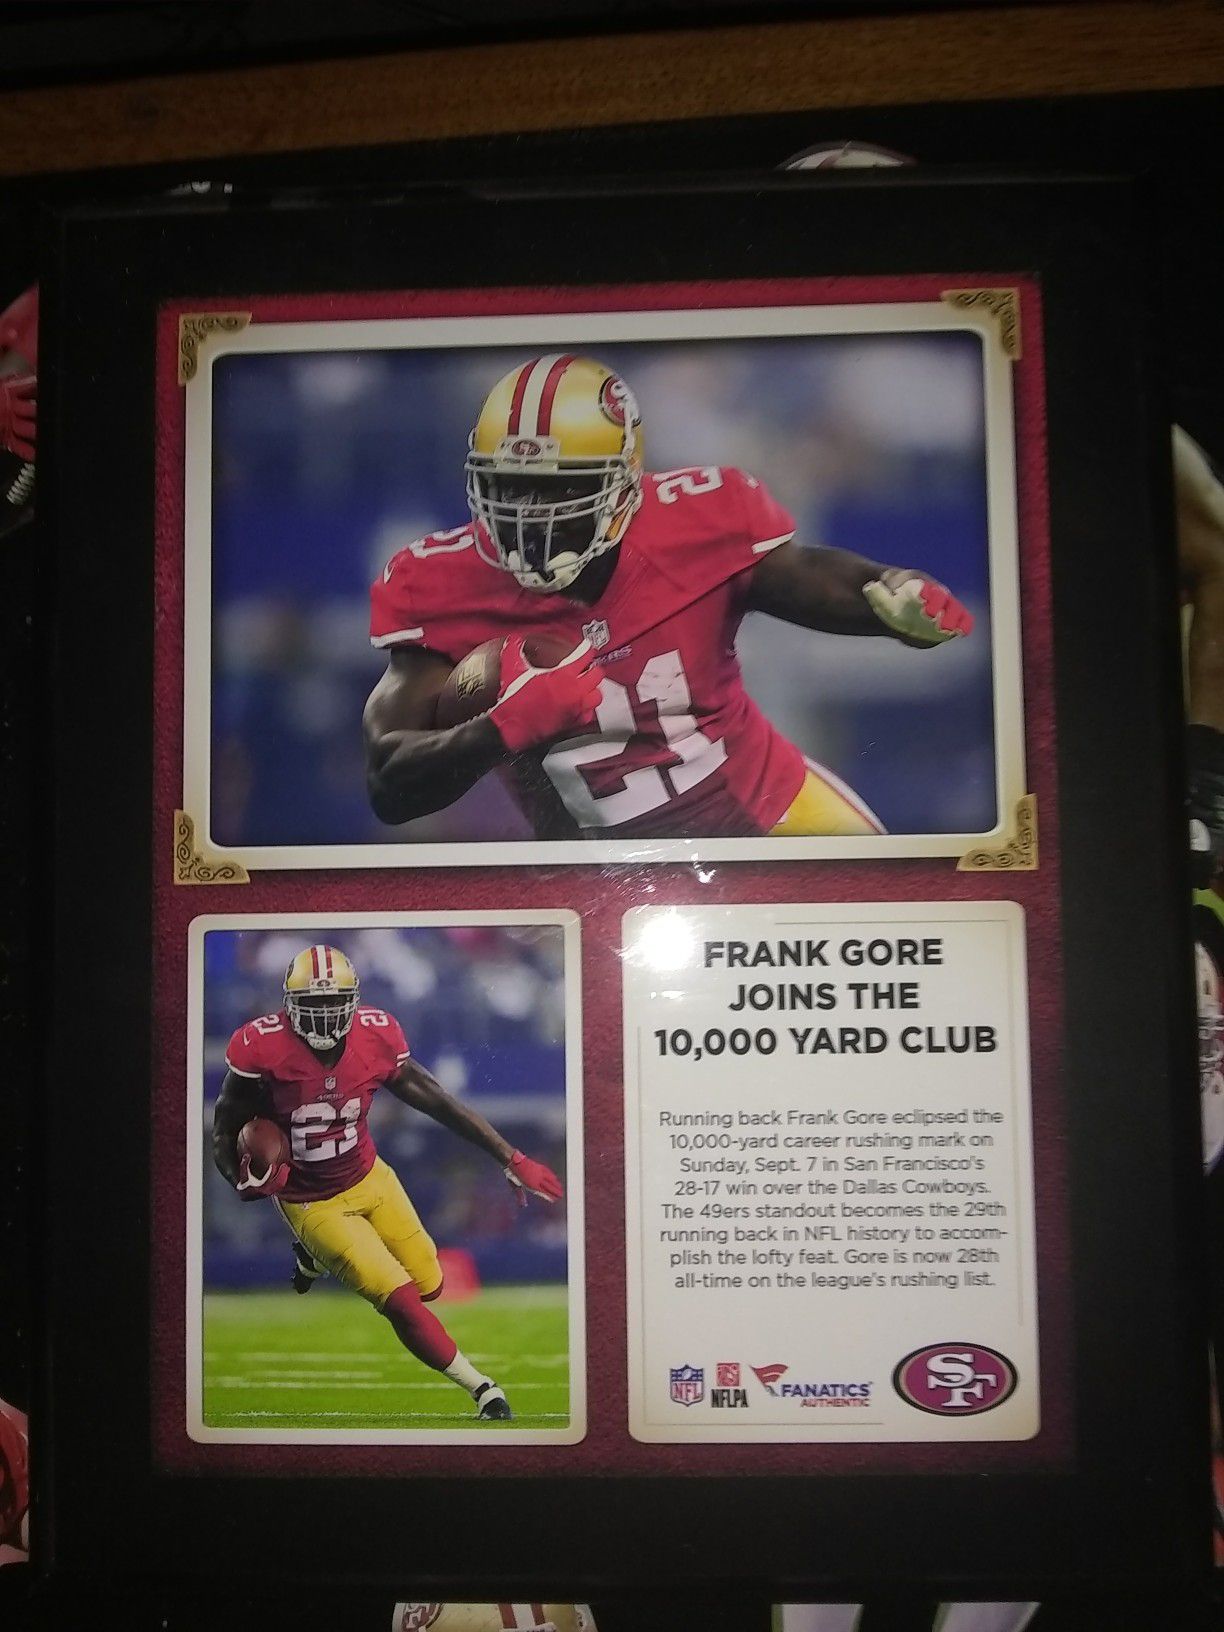 Frank Gore 10,000 yard club plaque